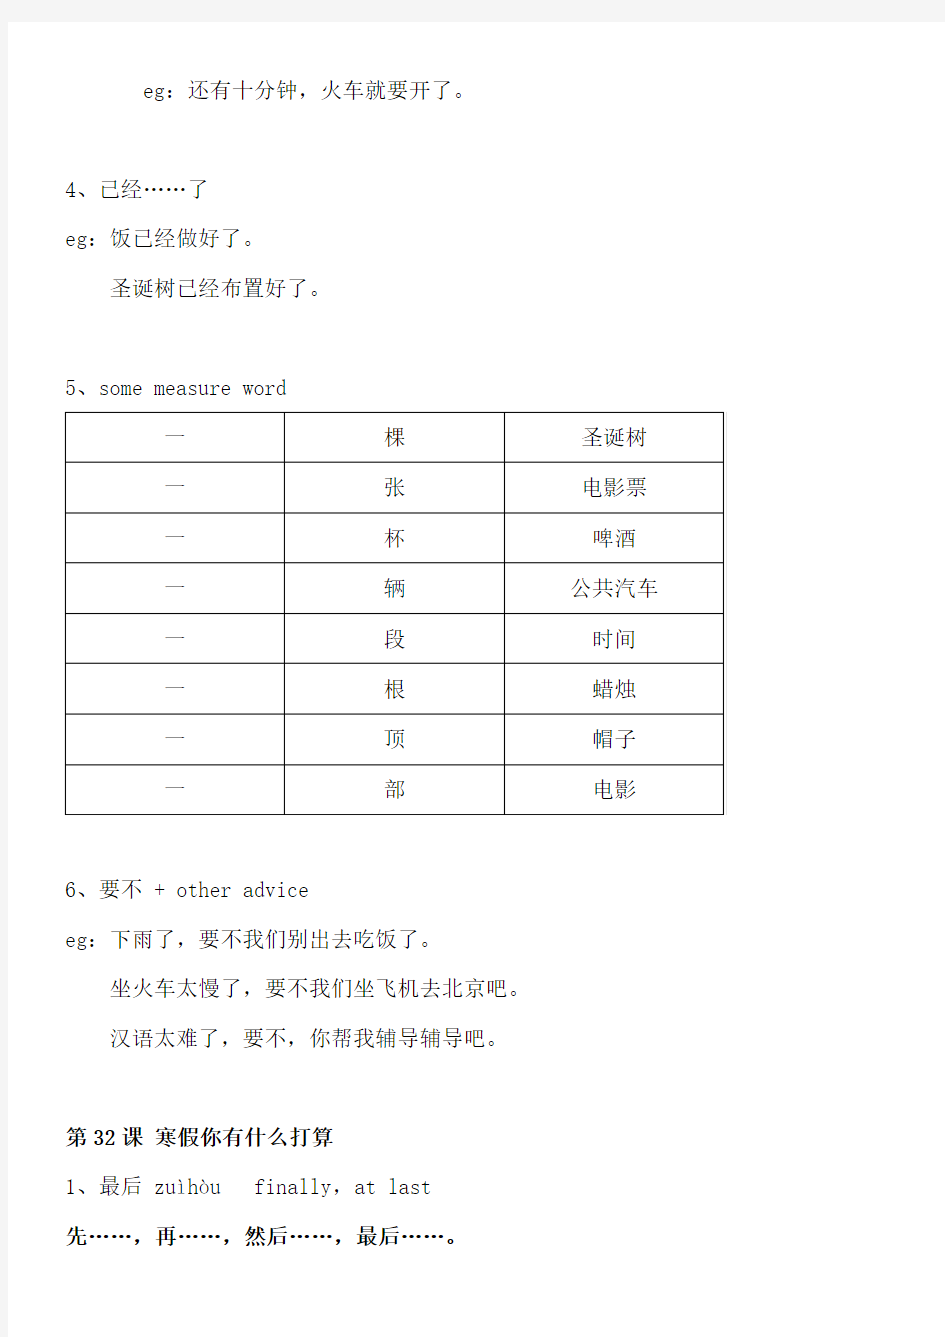 体验汉语基础篇下L31-36 复习材料